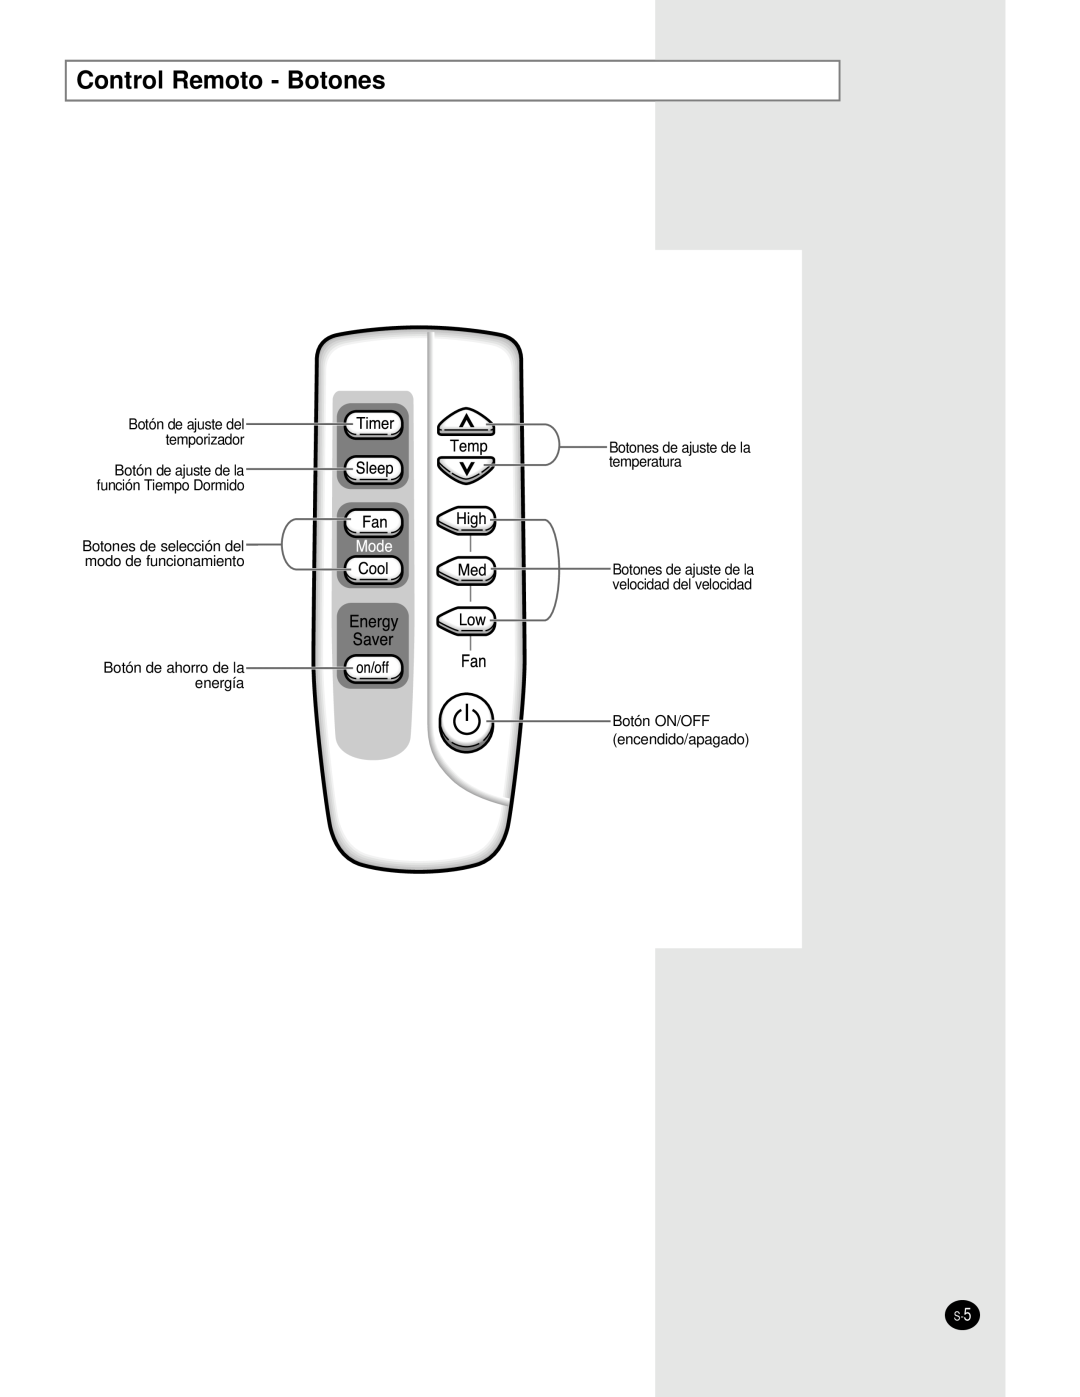 Samsung AW0660A Control Remoto - Botones, Botón de ajuste del temporizador, Botón de ajuste de la función Tiempo Dormido 